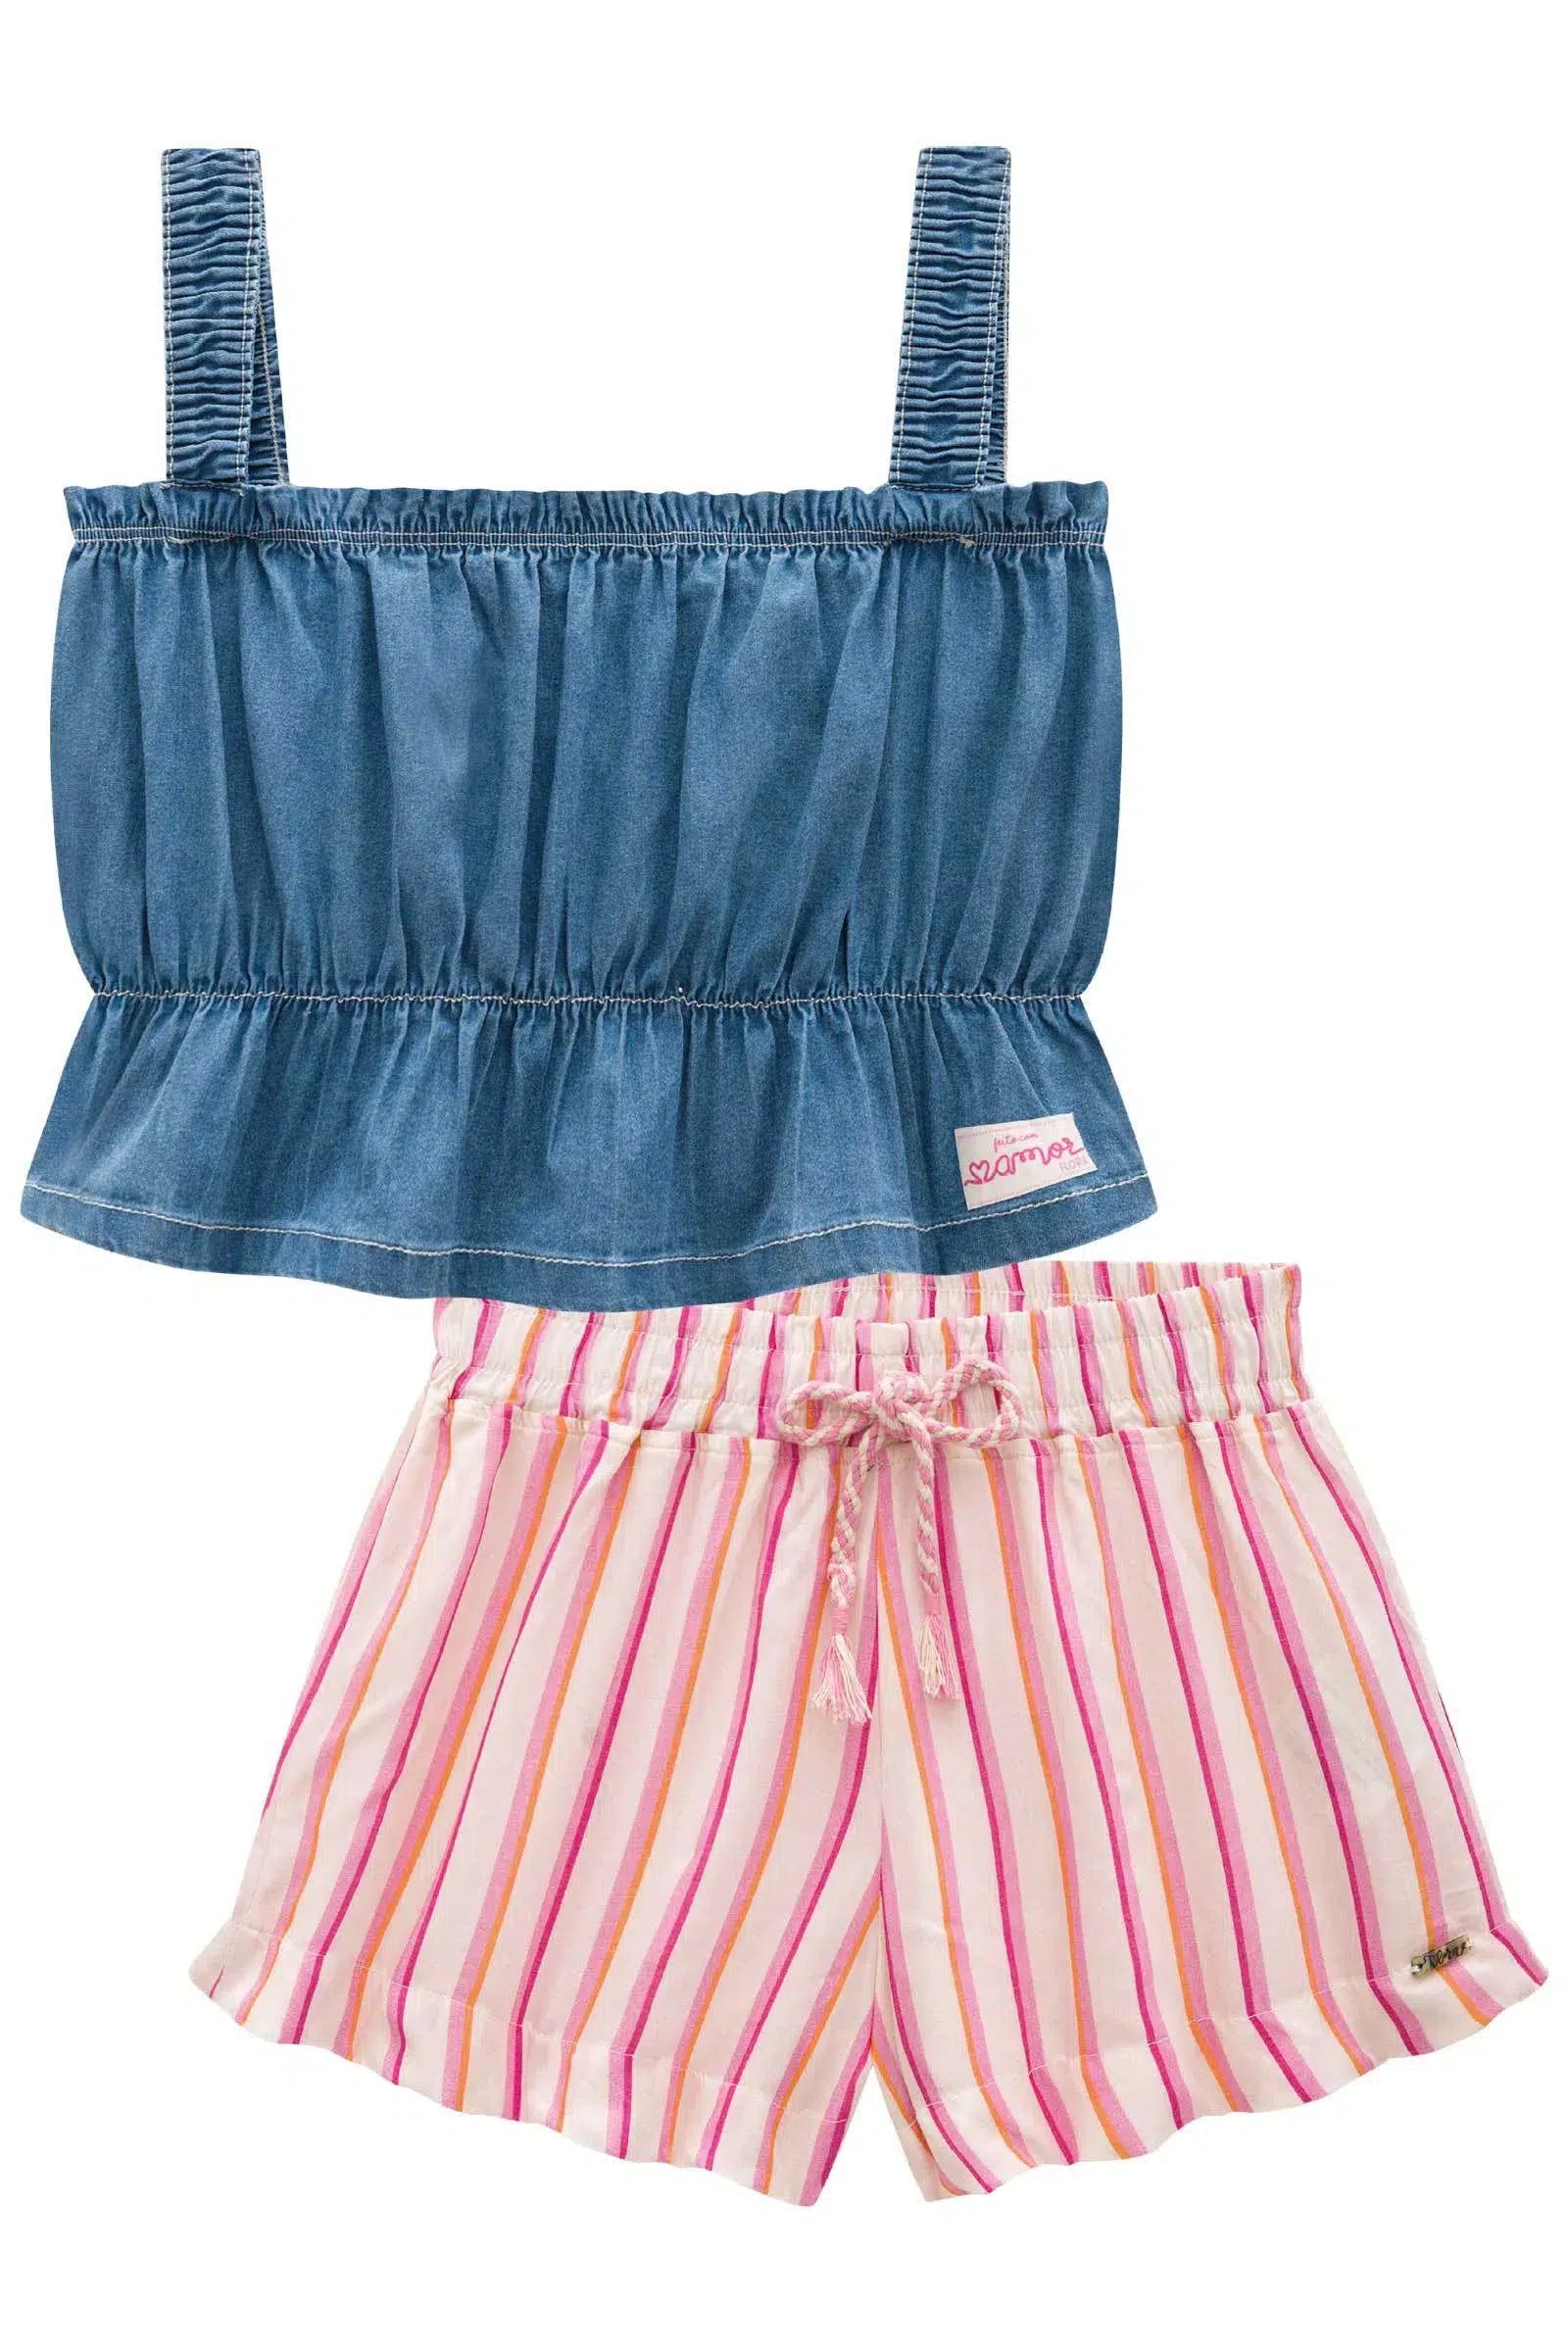 Conjunto de Blusa Boxy em Jeans Liz e Shorts em Viscose 72541 Infanti